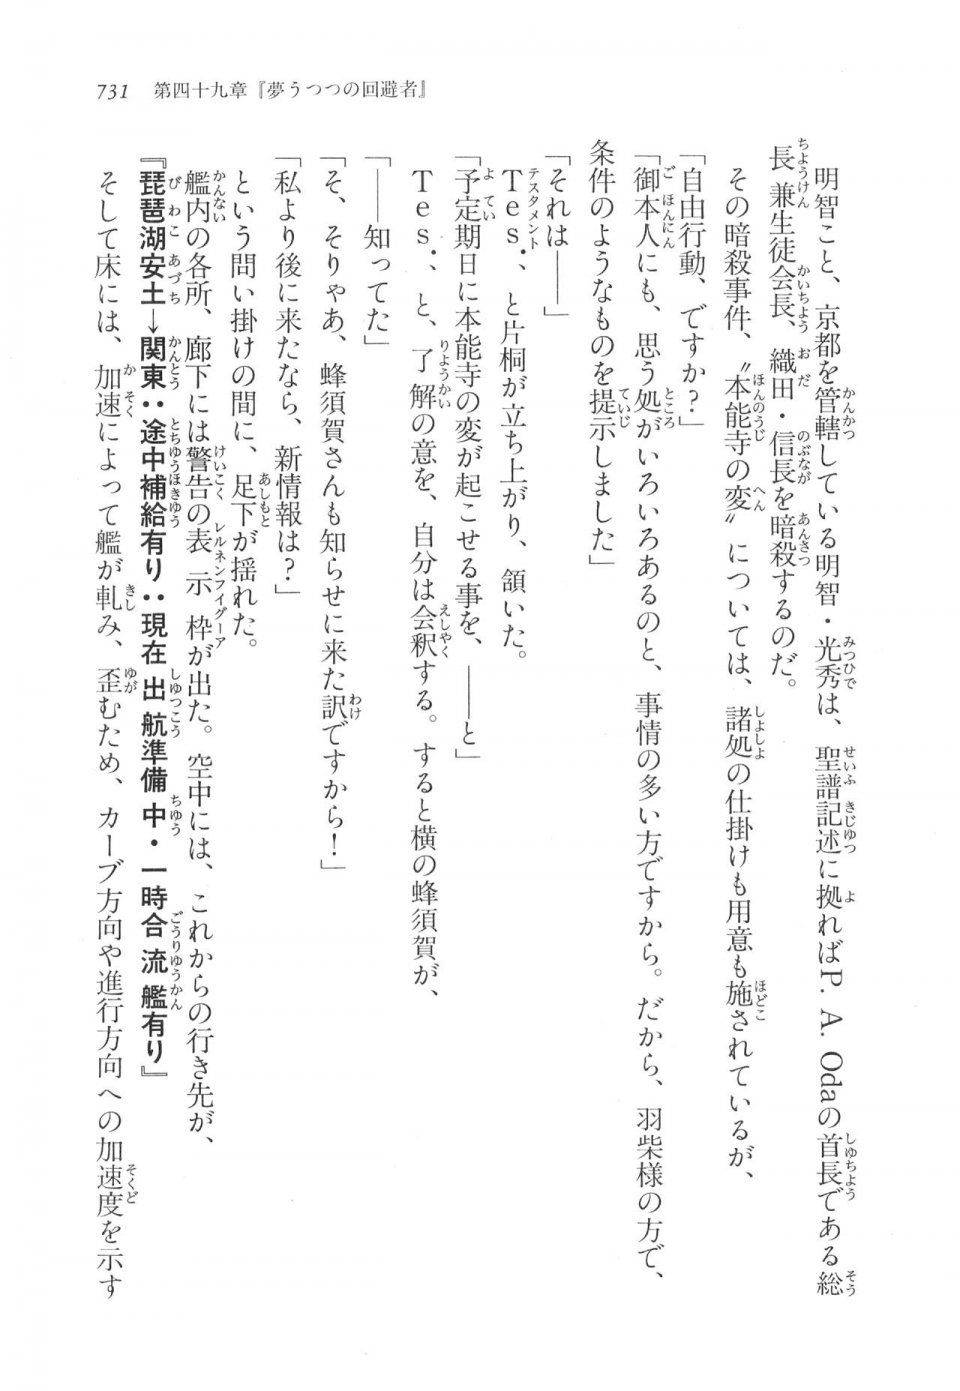 Kyoukai Senjou no Horizon LN Vol 17(7B) - Photo #733